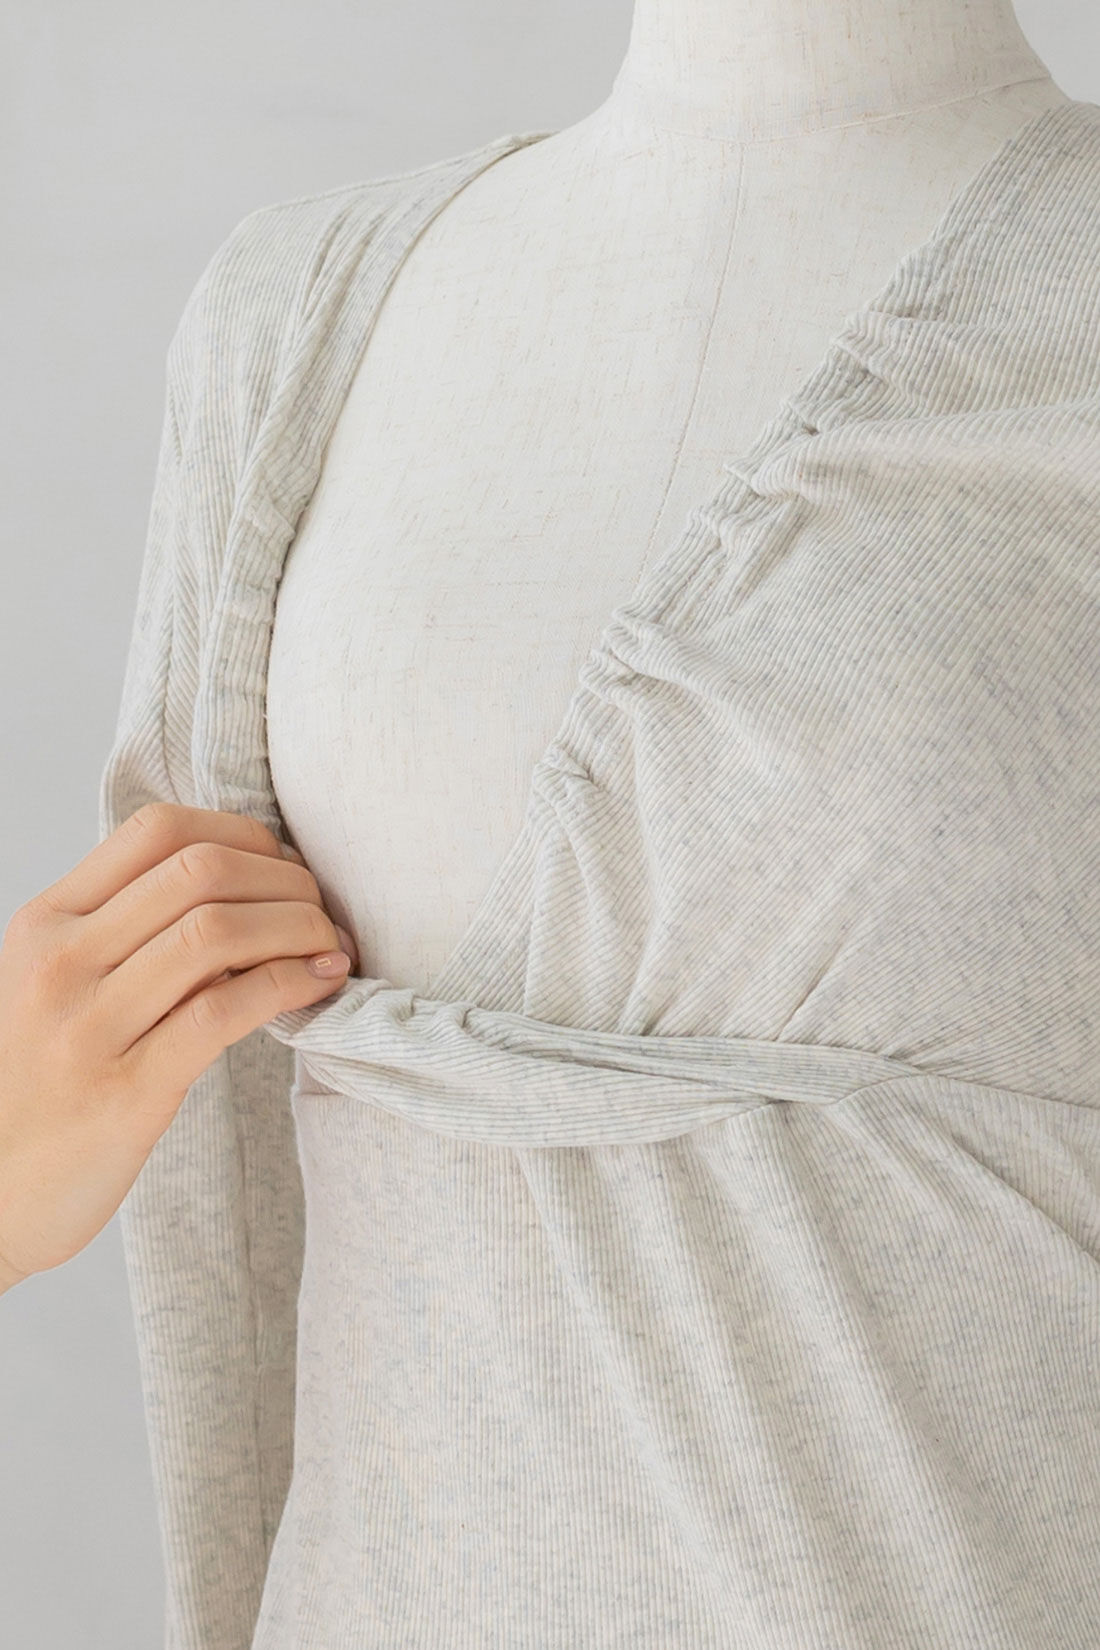 フェリシモMama|Moredde　綿１００％のエニワイズ加工が肌にやさしい　カシュクール授乳インナートップス〈アイボリー〉|サッと授乳ができます。